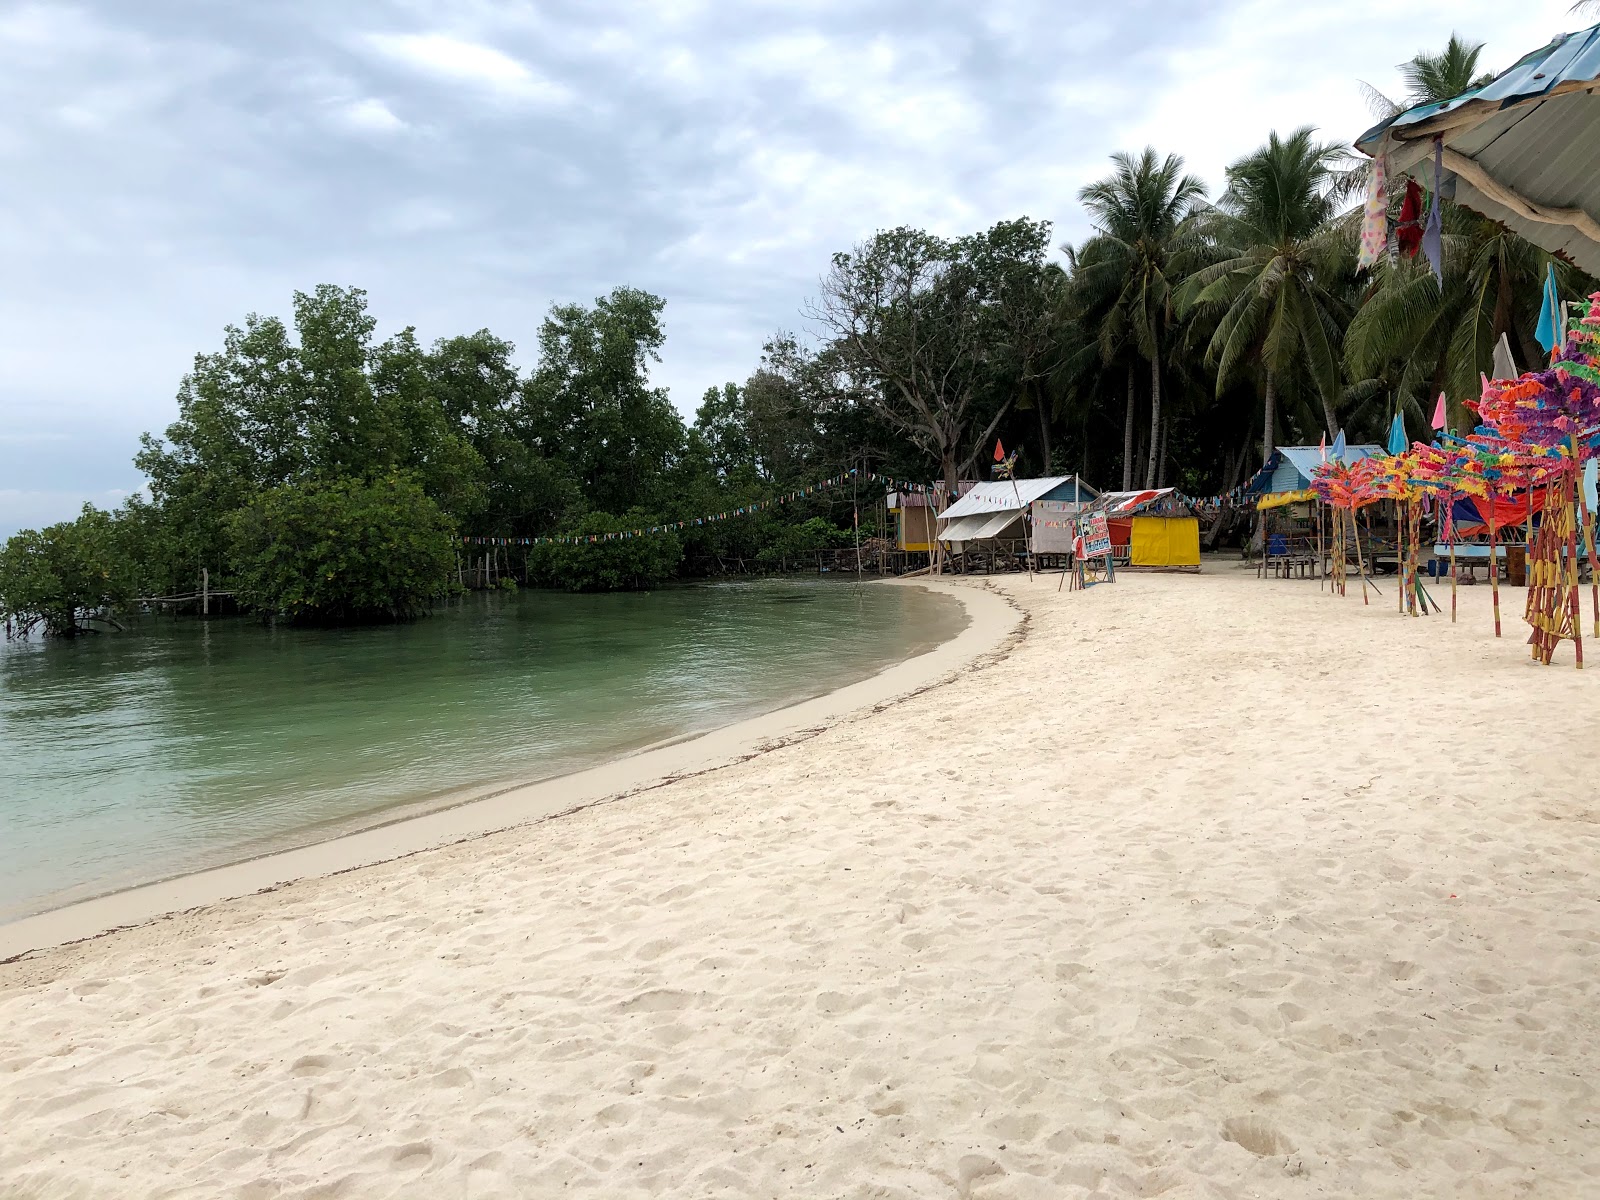 Foto de Wisata Pulau Mubut Darat com areia brilhante superfície